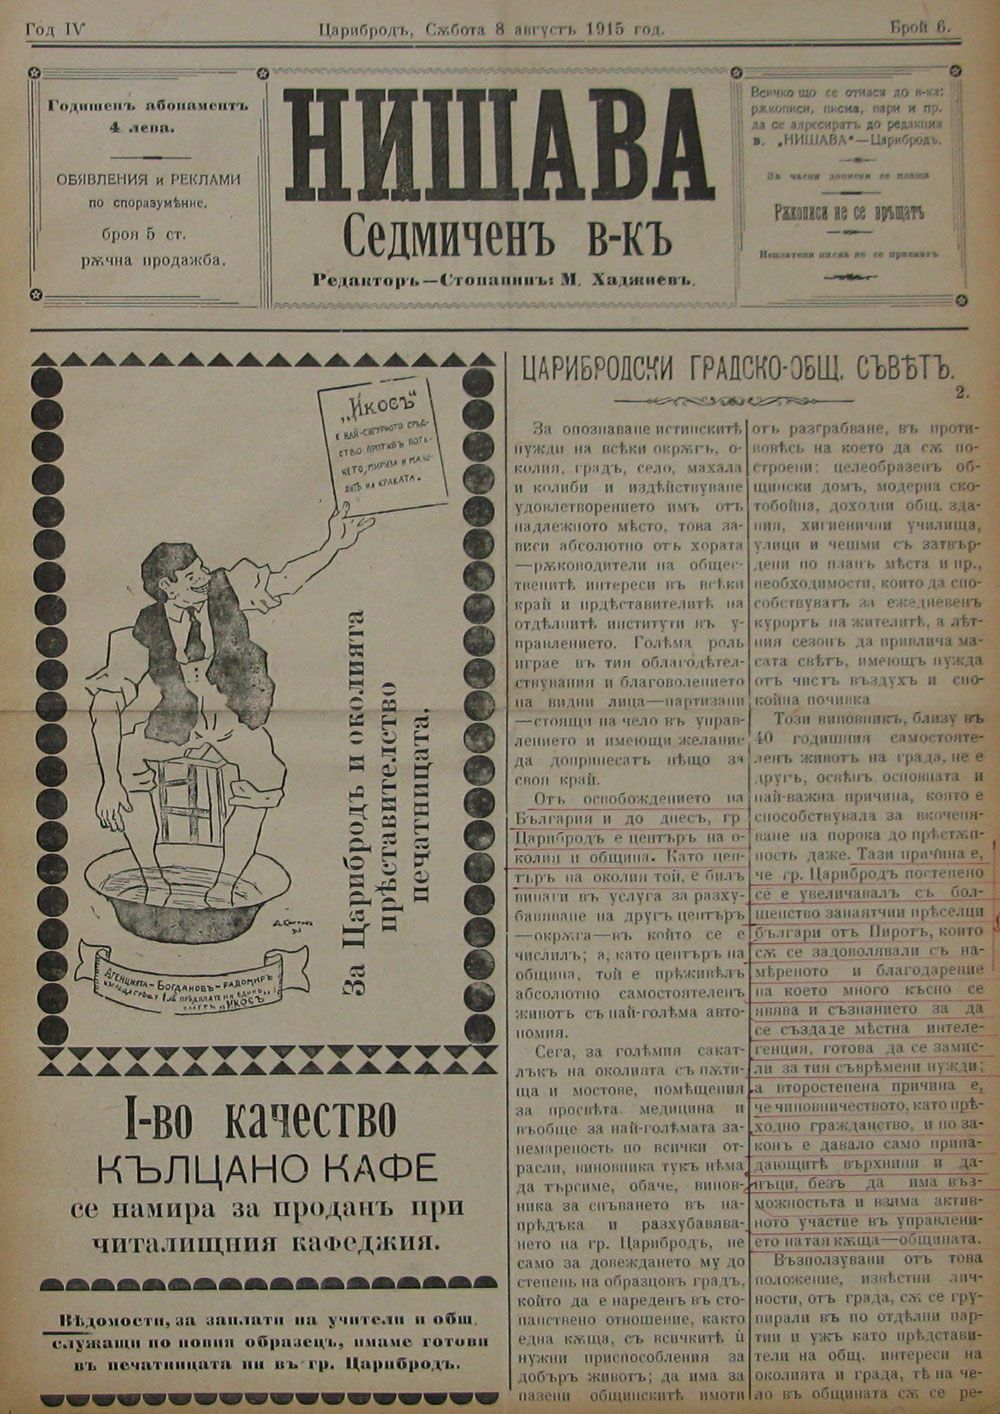 в-к "Нишава", 1915, бр. 6, стр. 1